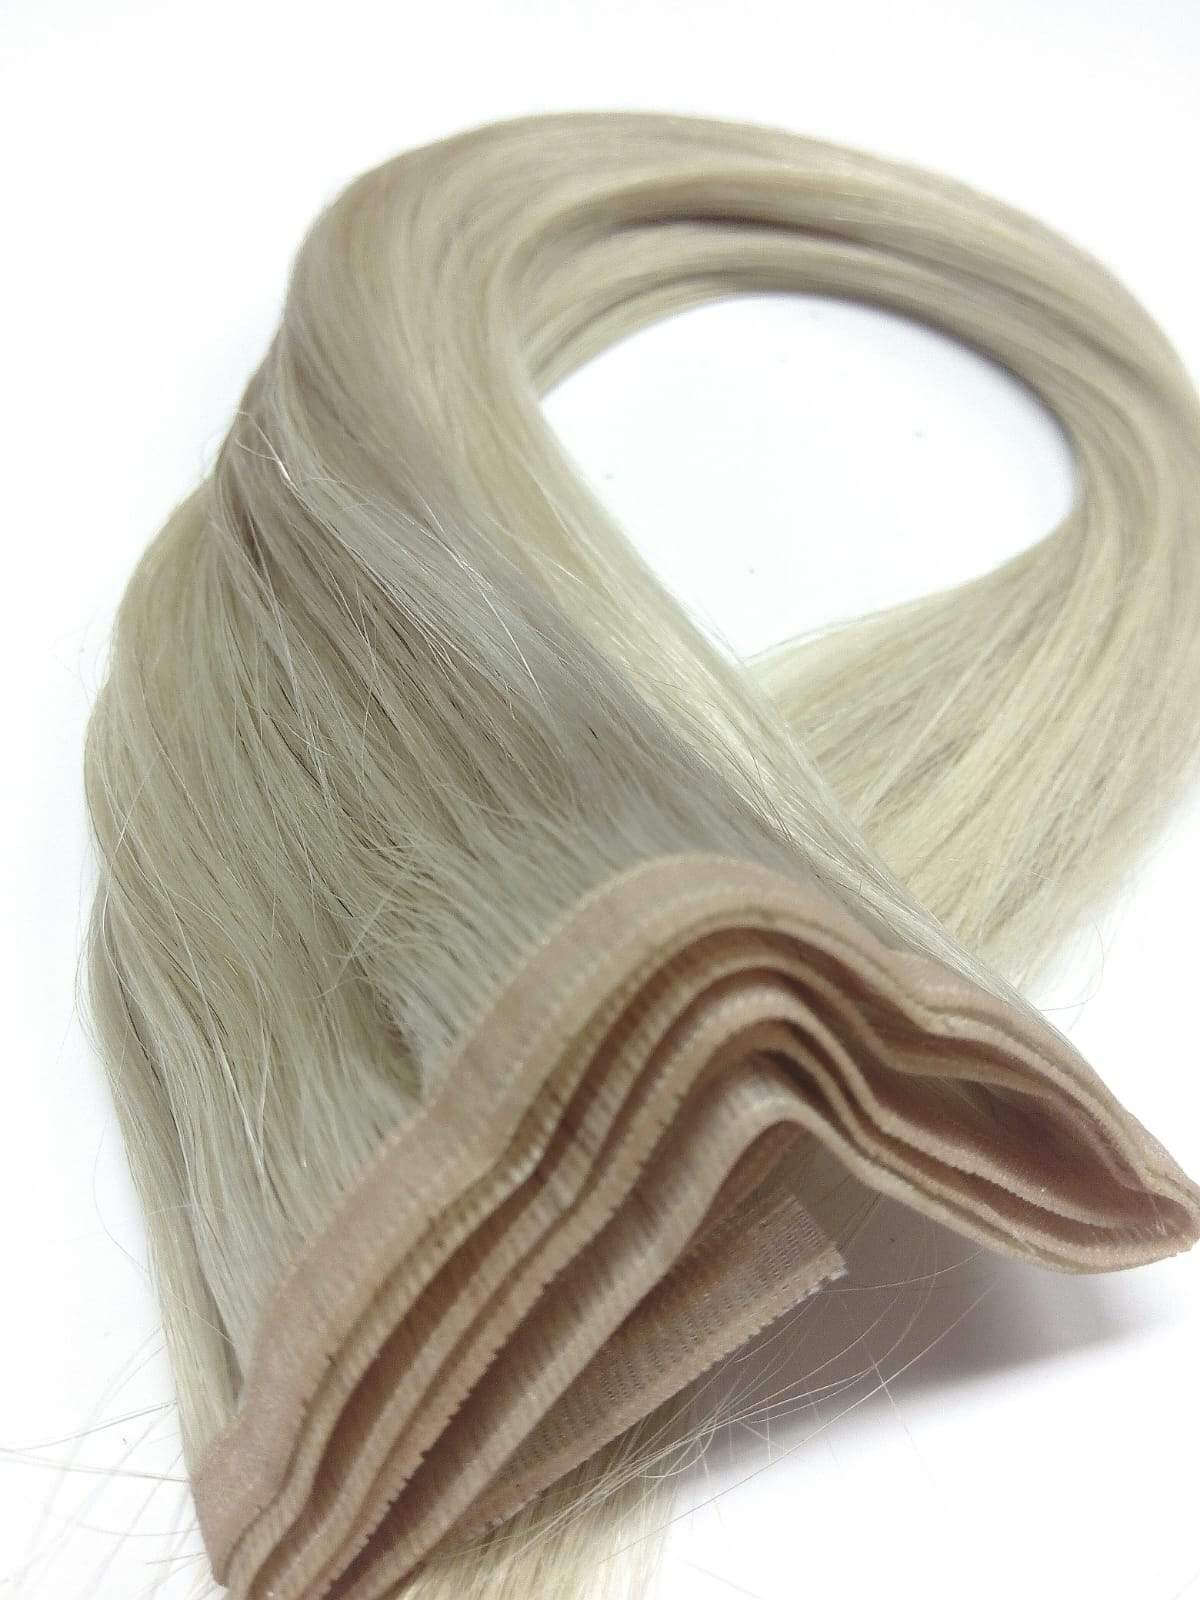 שיער אנושי בתולה ברזילאי - ערב מונו, 18 אינץ', חלק, צבע 60,100 גרם - משלוח מהיר